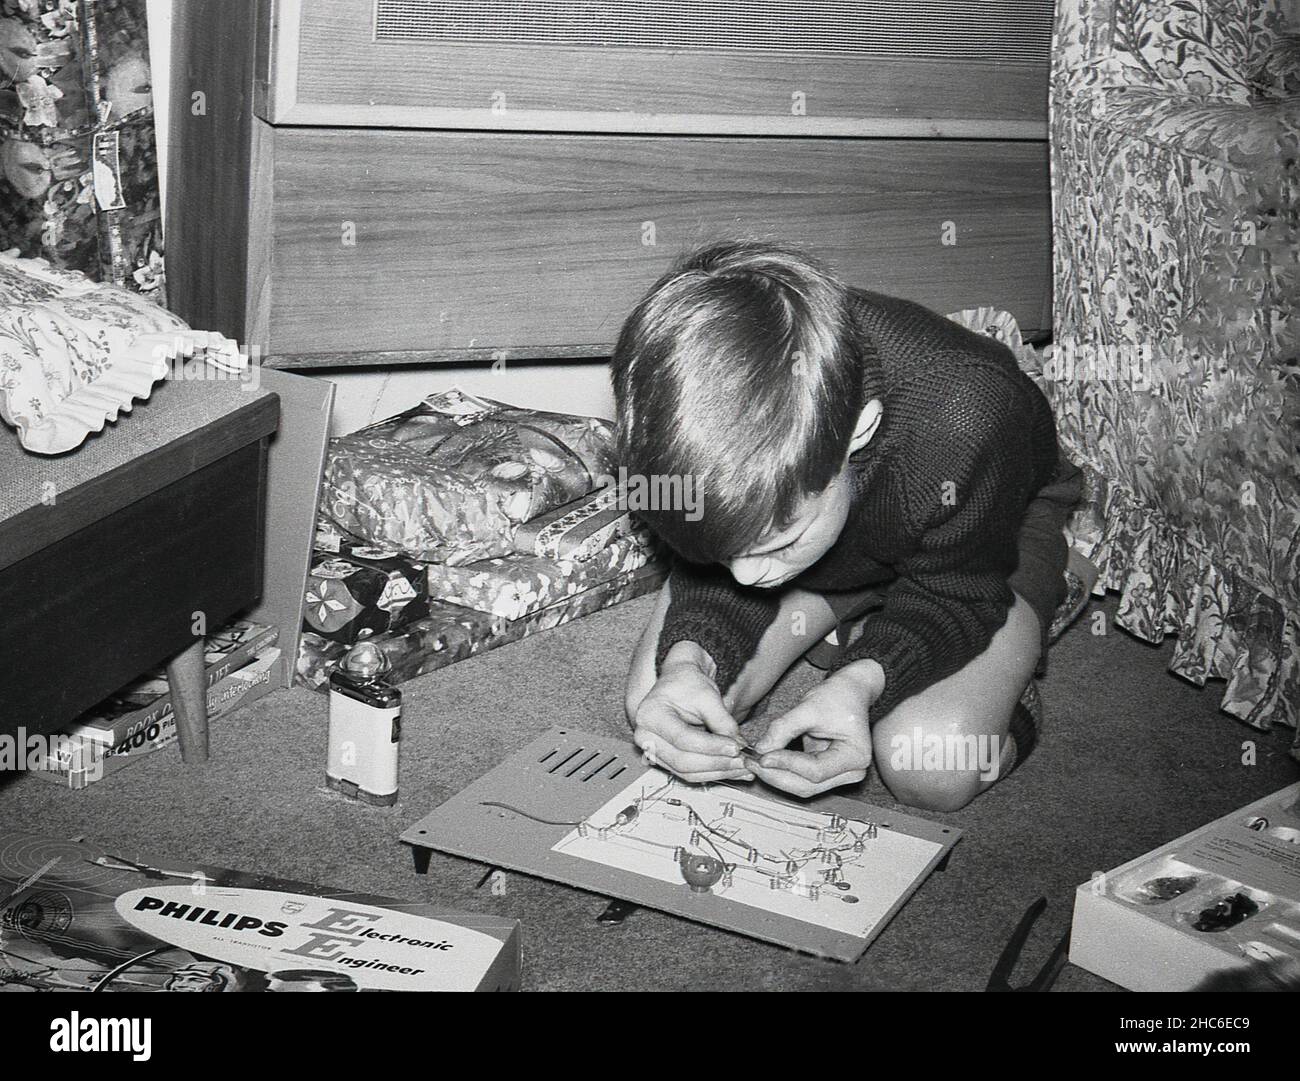 1960s, histórico, dentro de una habitación, un niño arrodillado en el suelo jugando con un regalo de Navidad, una placa de circuito de un kit de ingeniero electrónico de Philips, Inglaterra, Reino Unido. Los kits 'Young Engineer' en caja fueron una actividad educativa y divertida popular para los niños pequeños en esta época. Foto de stock